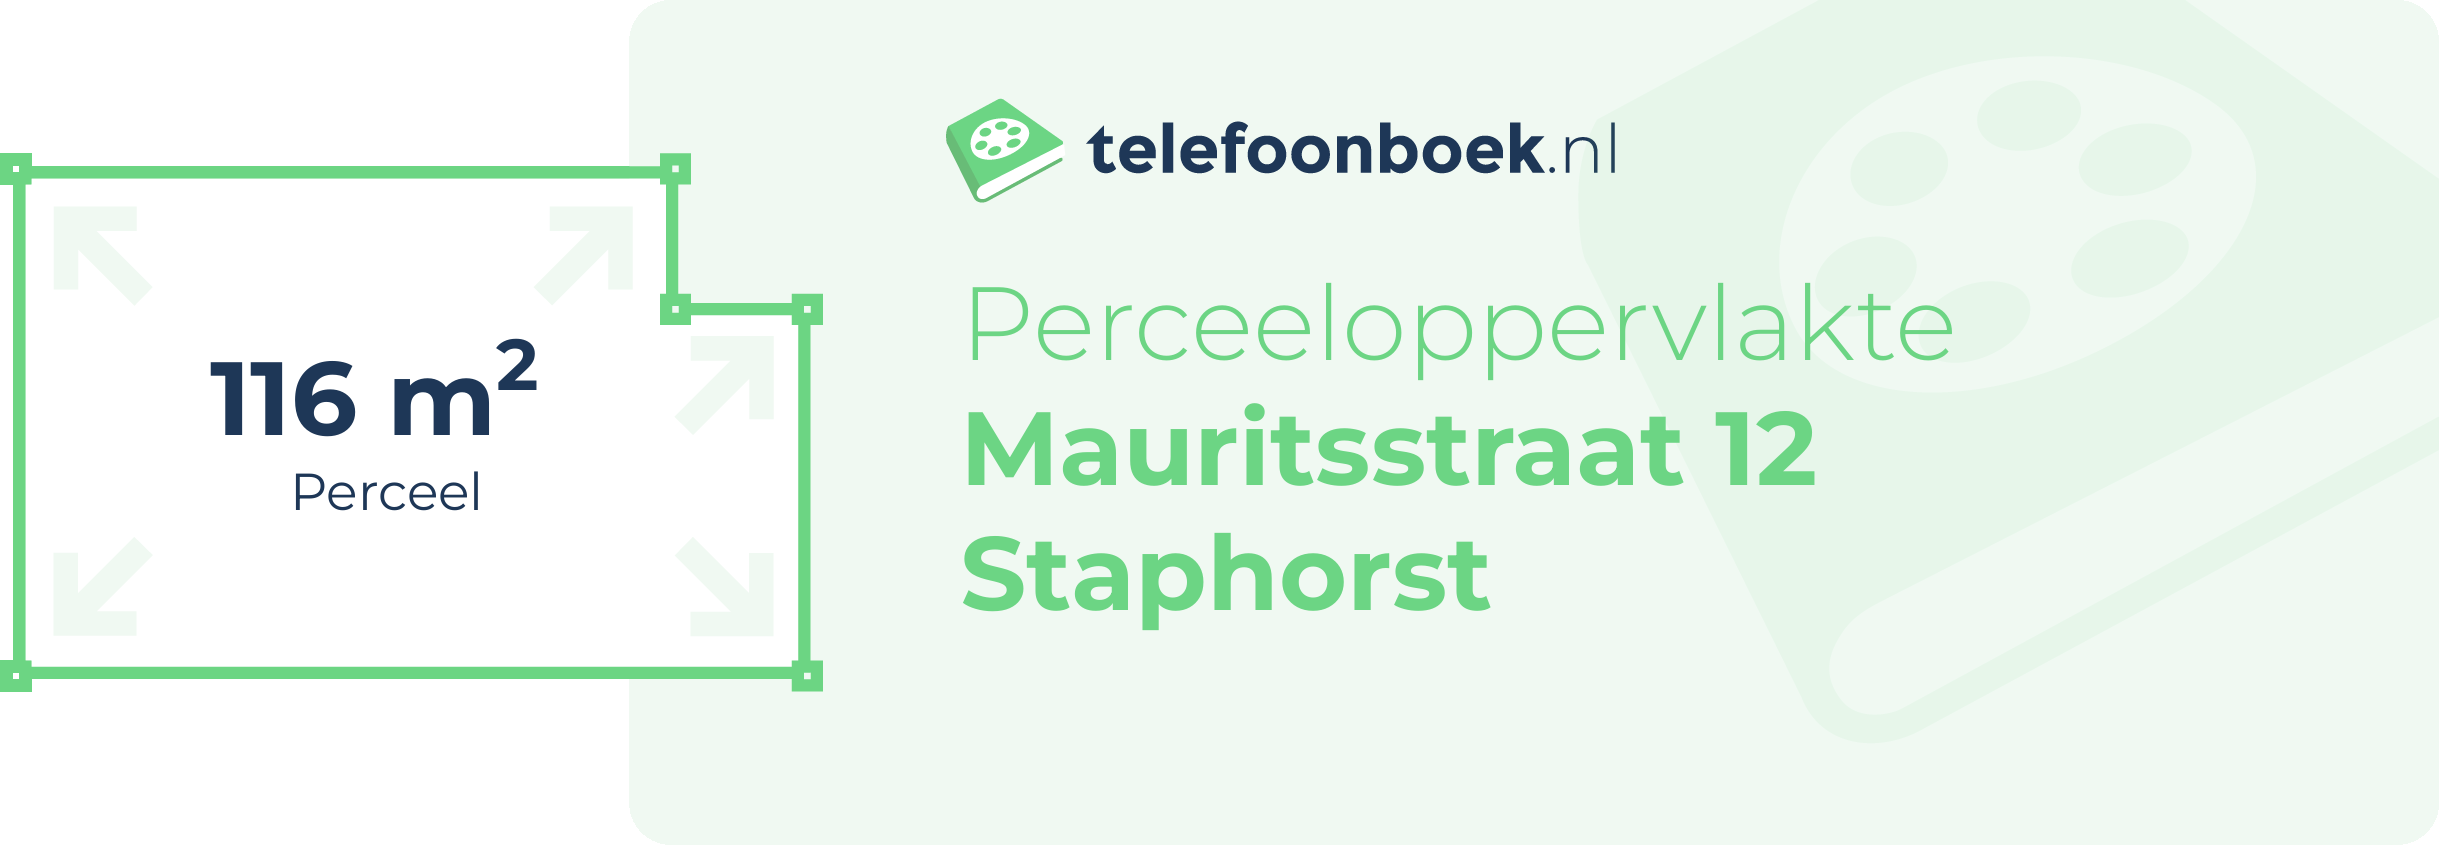 Perceeloppervlakte Mauritsstraat 12 Staphorst